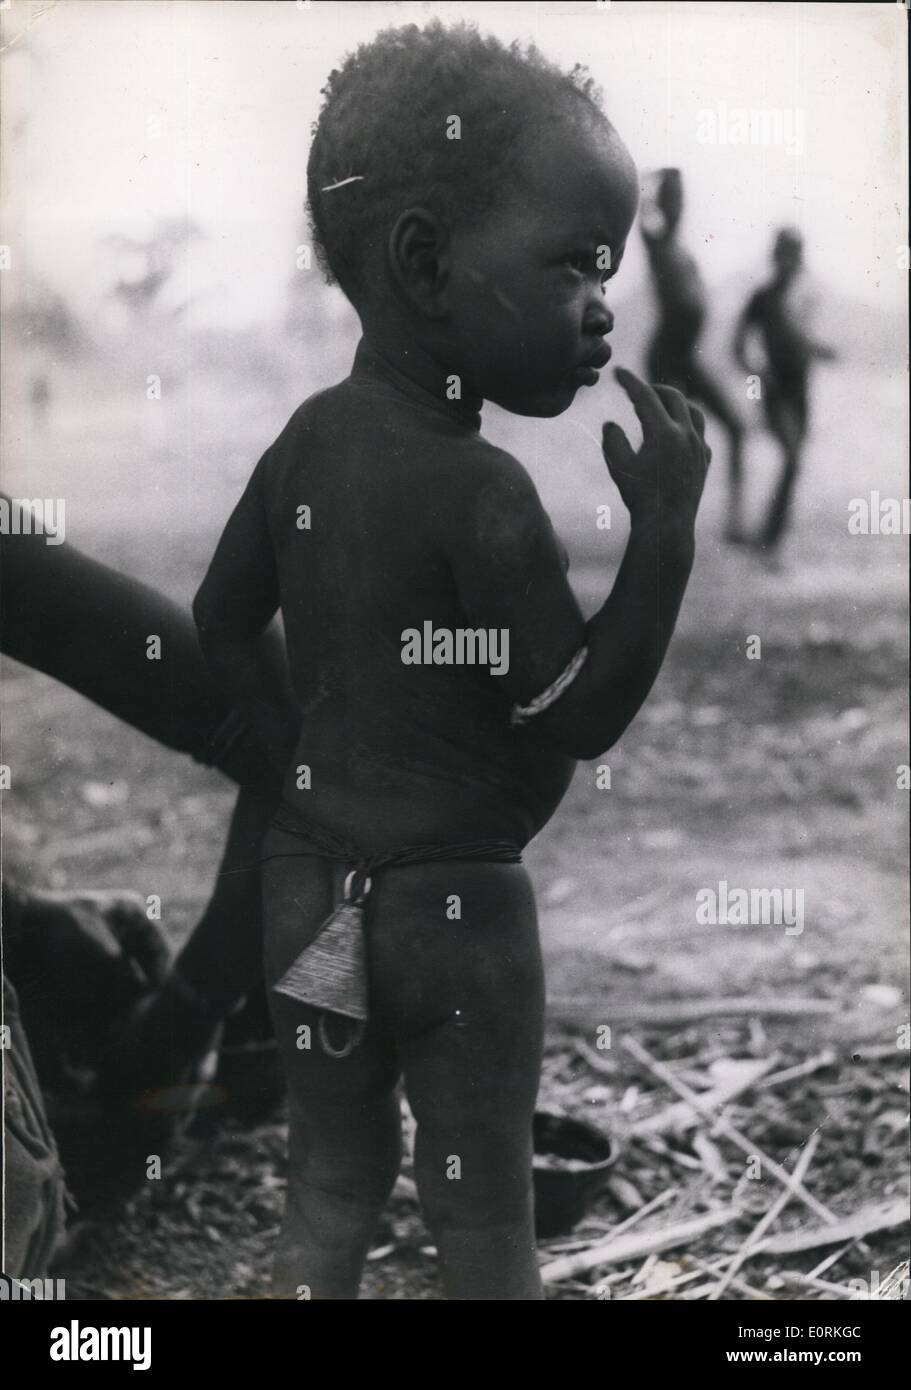 Jan 1, 1960 - Para ahuyentar a los malos espíritus, la madre de este picaninny ha fijado una campana alrededor de la cintura de su hijo. Foto de stock